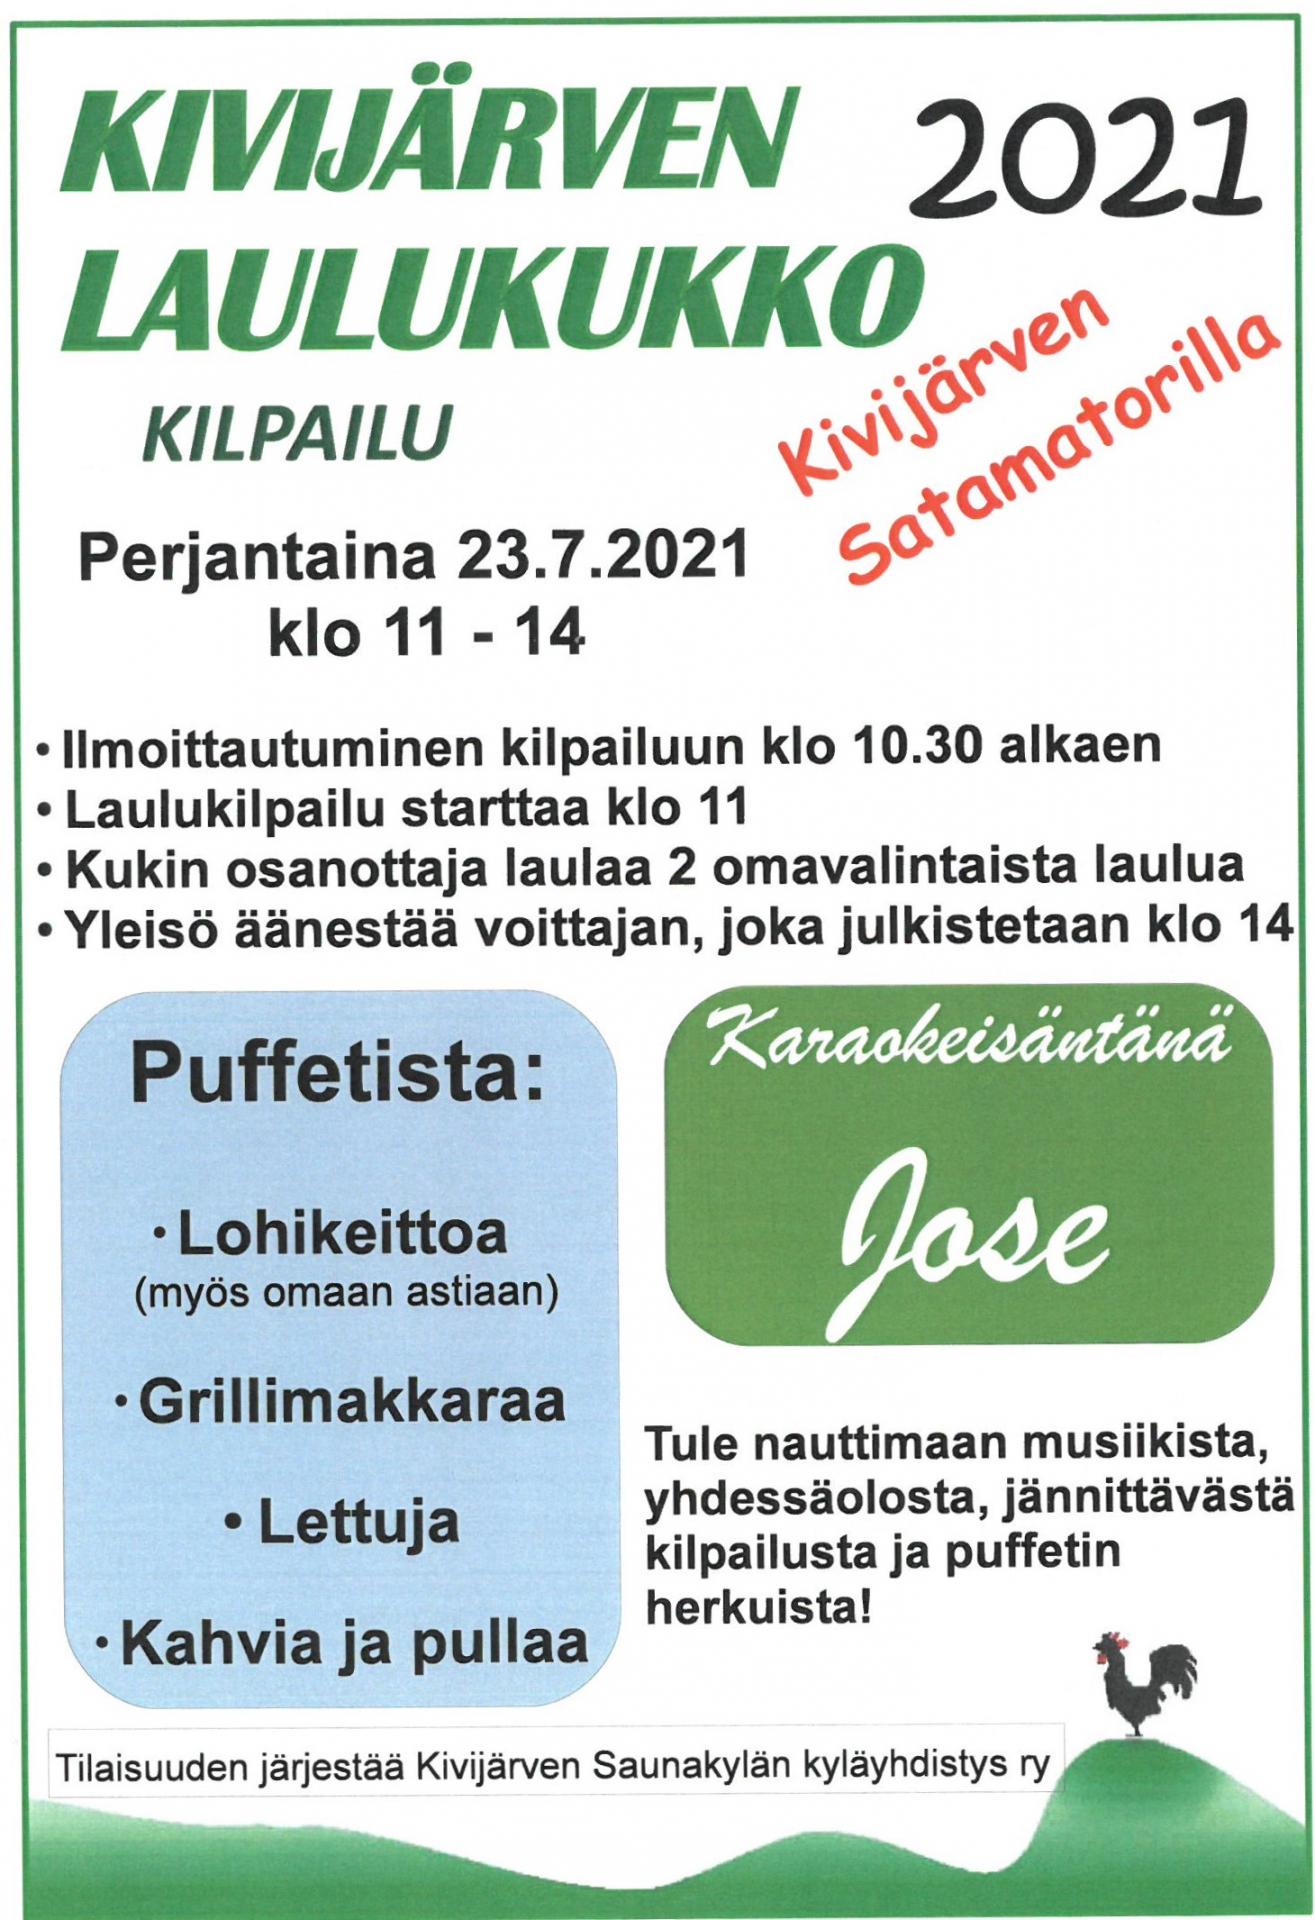 Kivijärven Laulukukko-kilpailu 2021